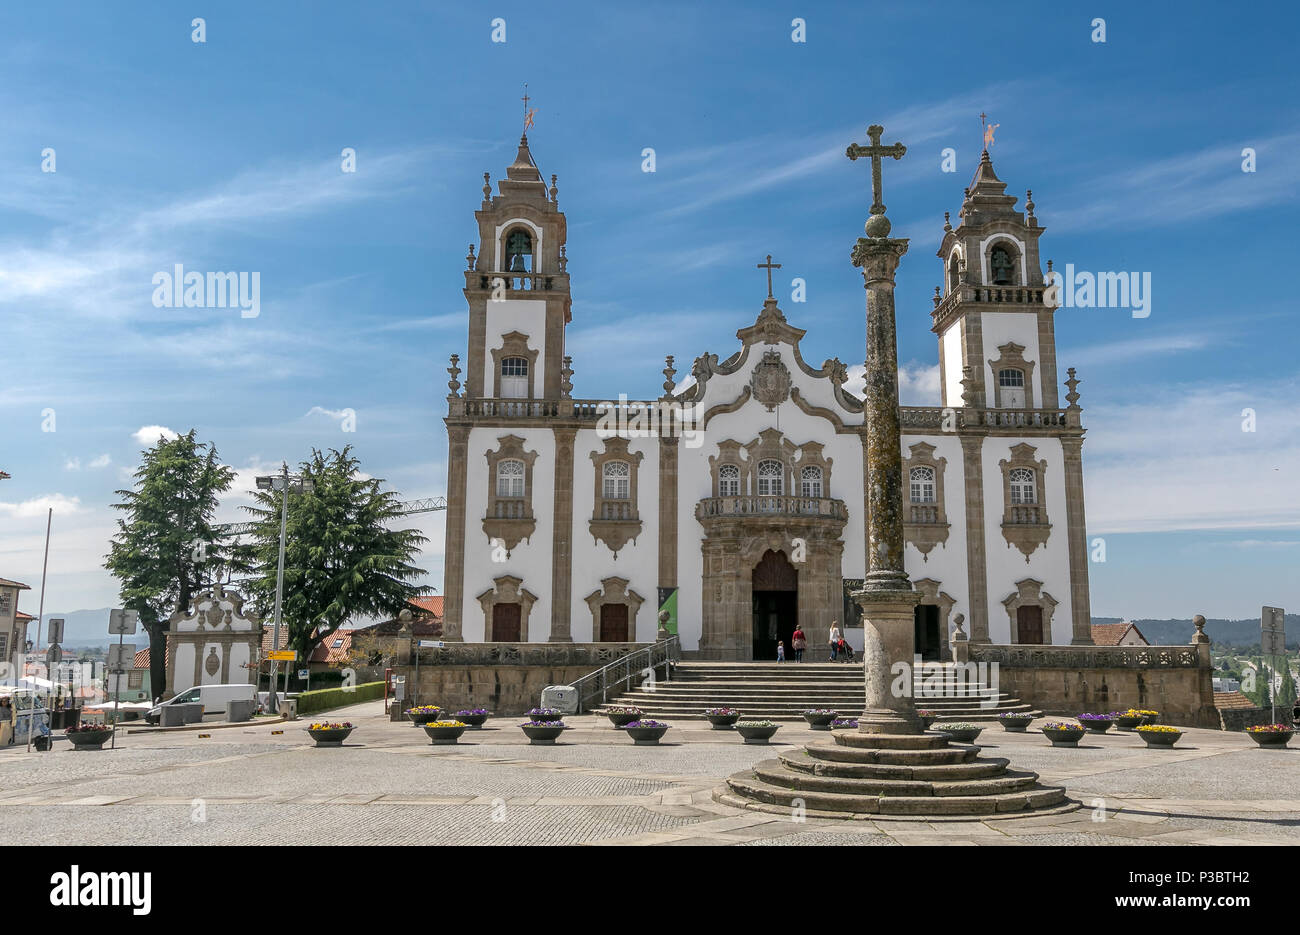 Igreja da Misericórdia - The Church of Mercy - in Viseu, Portugal. Stock Photo